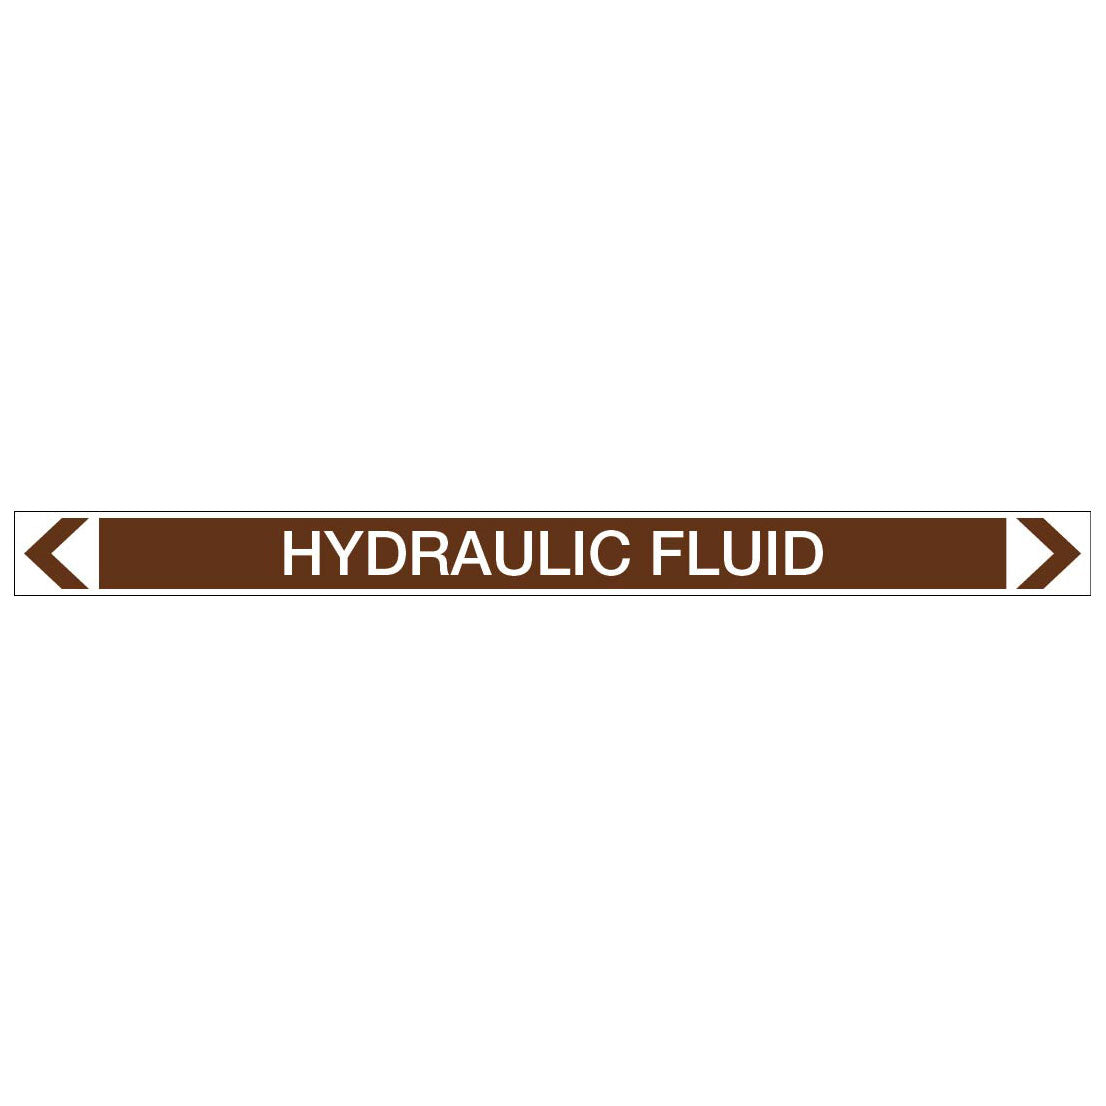 Oils - Hydraulic Fluid - Pipe Marker Sticker